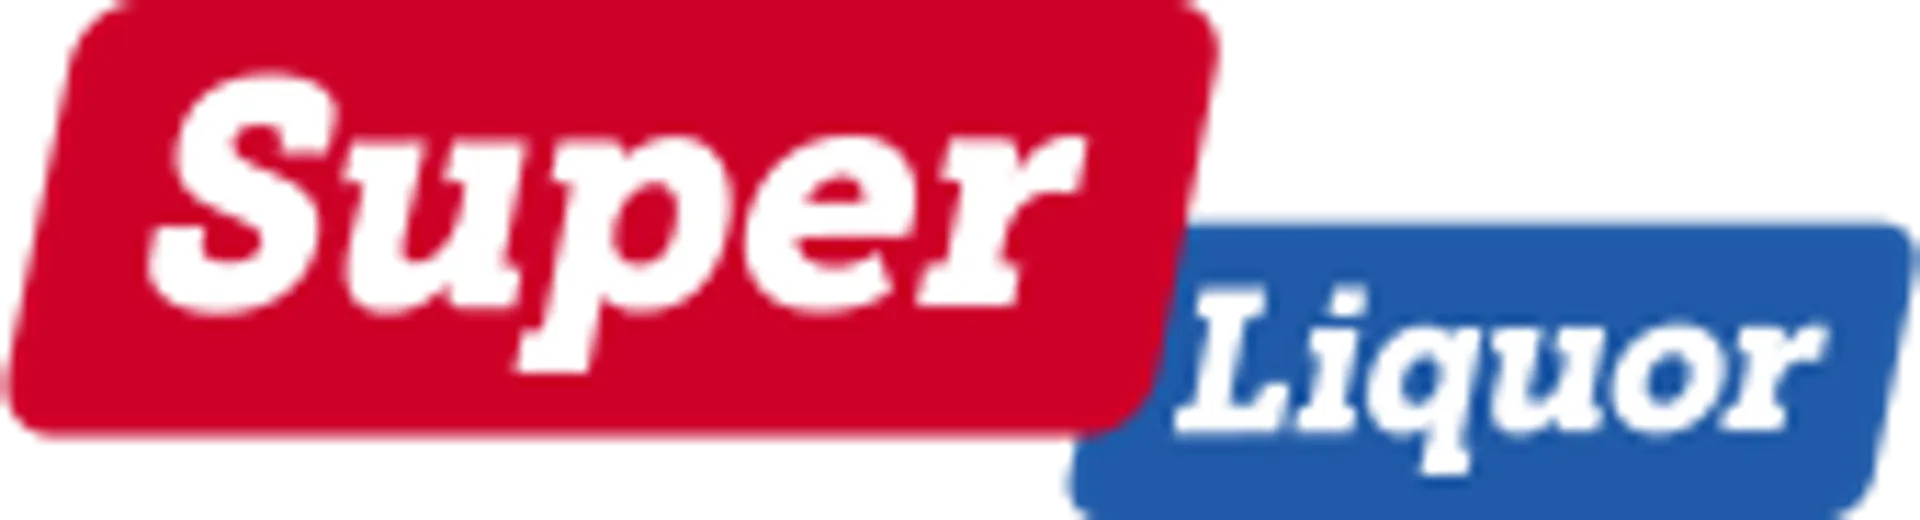 SUPER LIQUOR logo. Current weekly ad